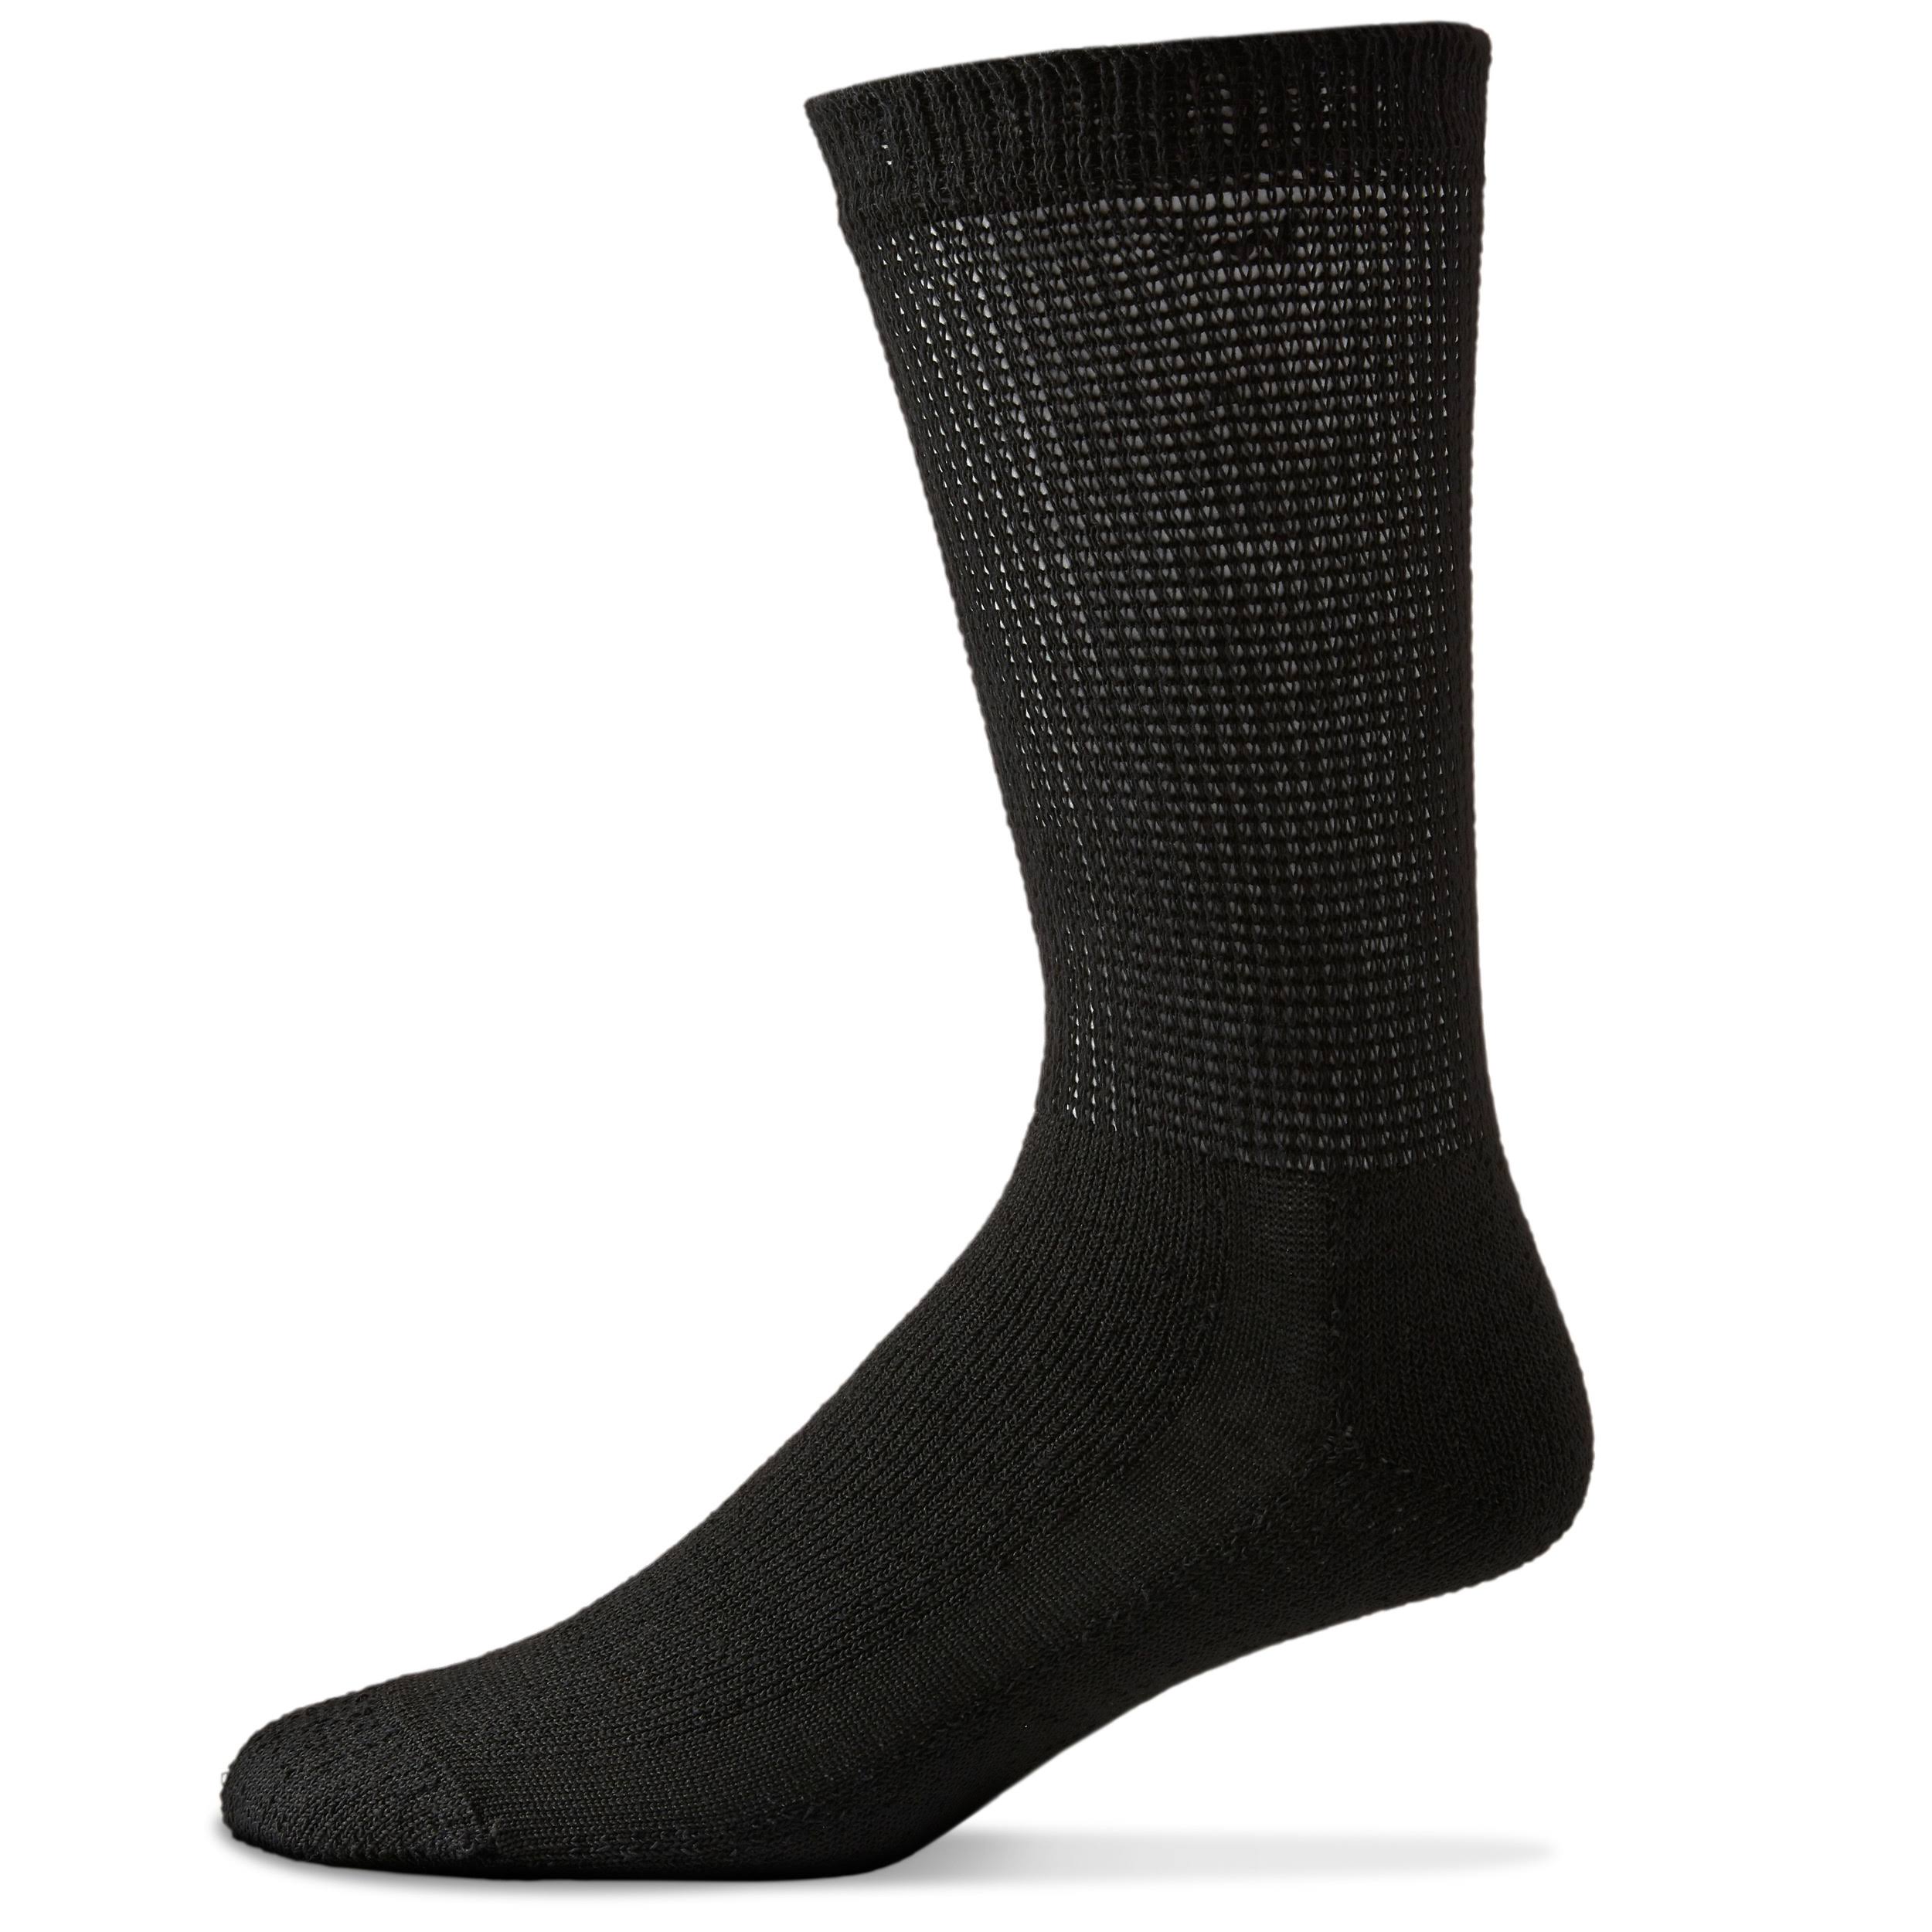 Sole Pleasers Men's Diabetic Socks - Black, 3 Pair